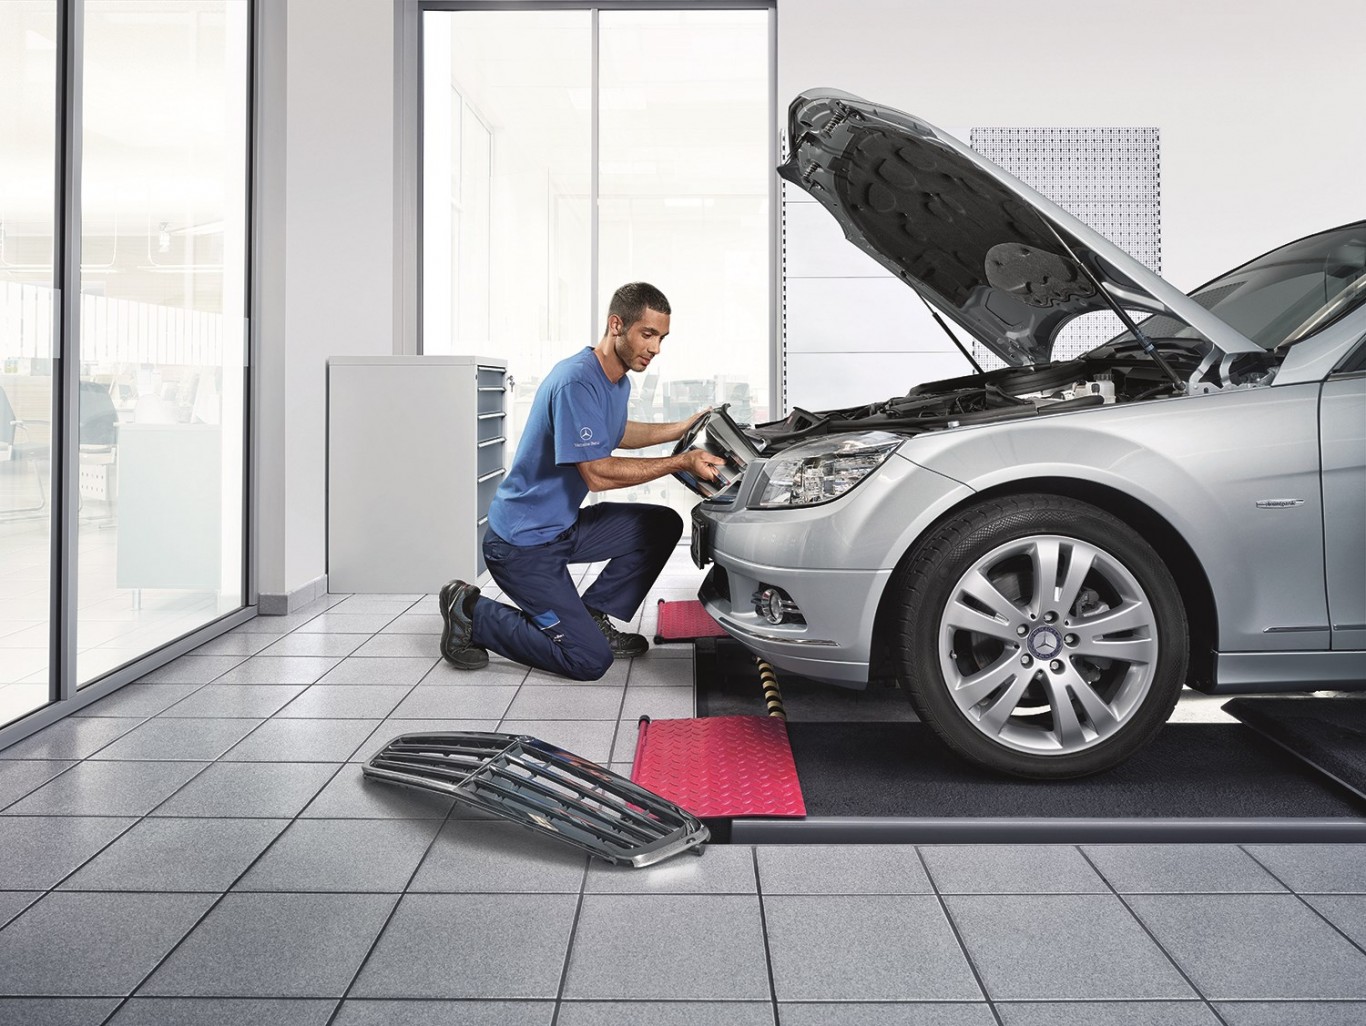 Mercedes-Benz Auto Body Repair Centres awards superior service